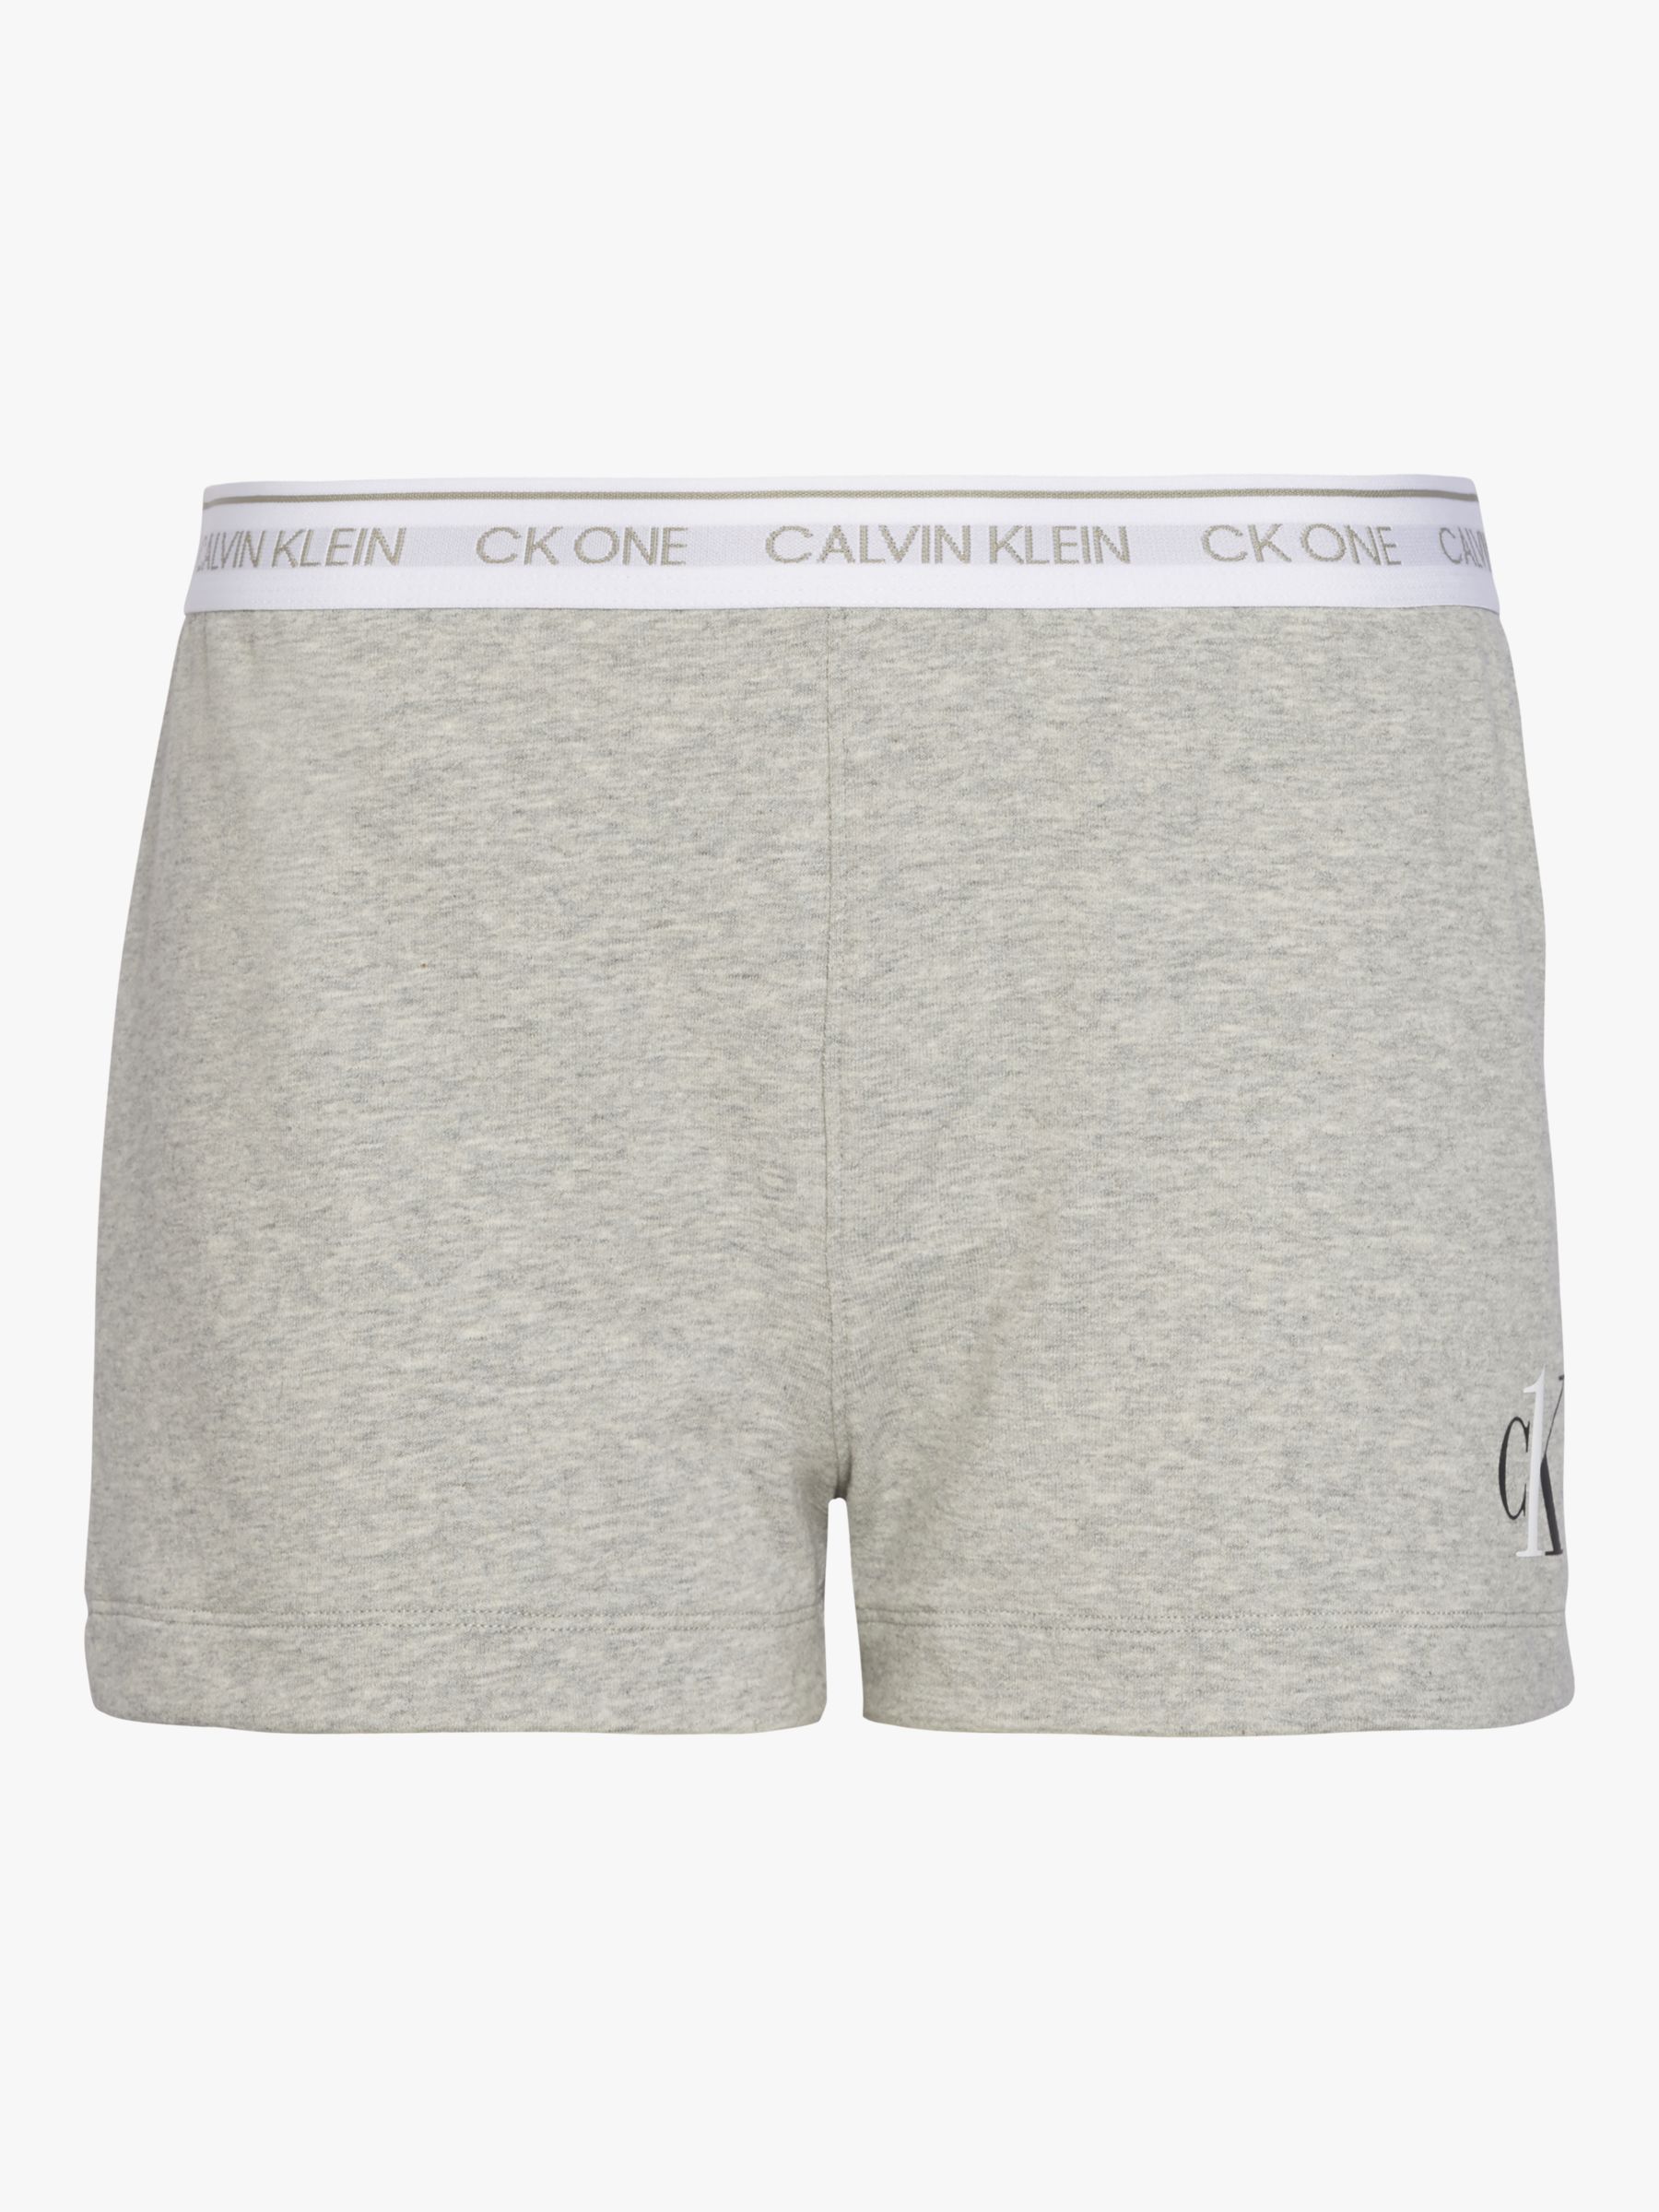 calvin klein sleeping shorts